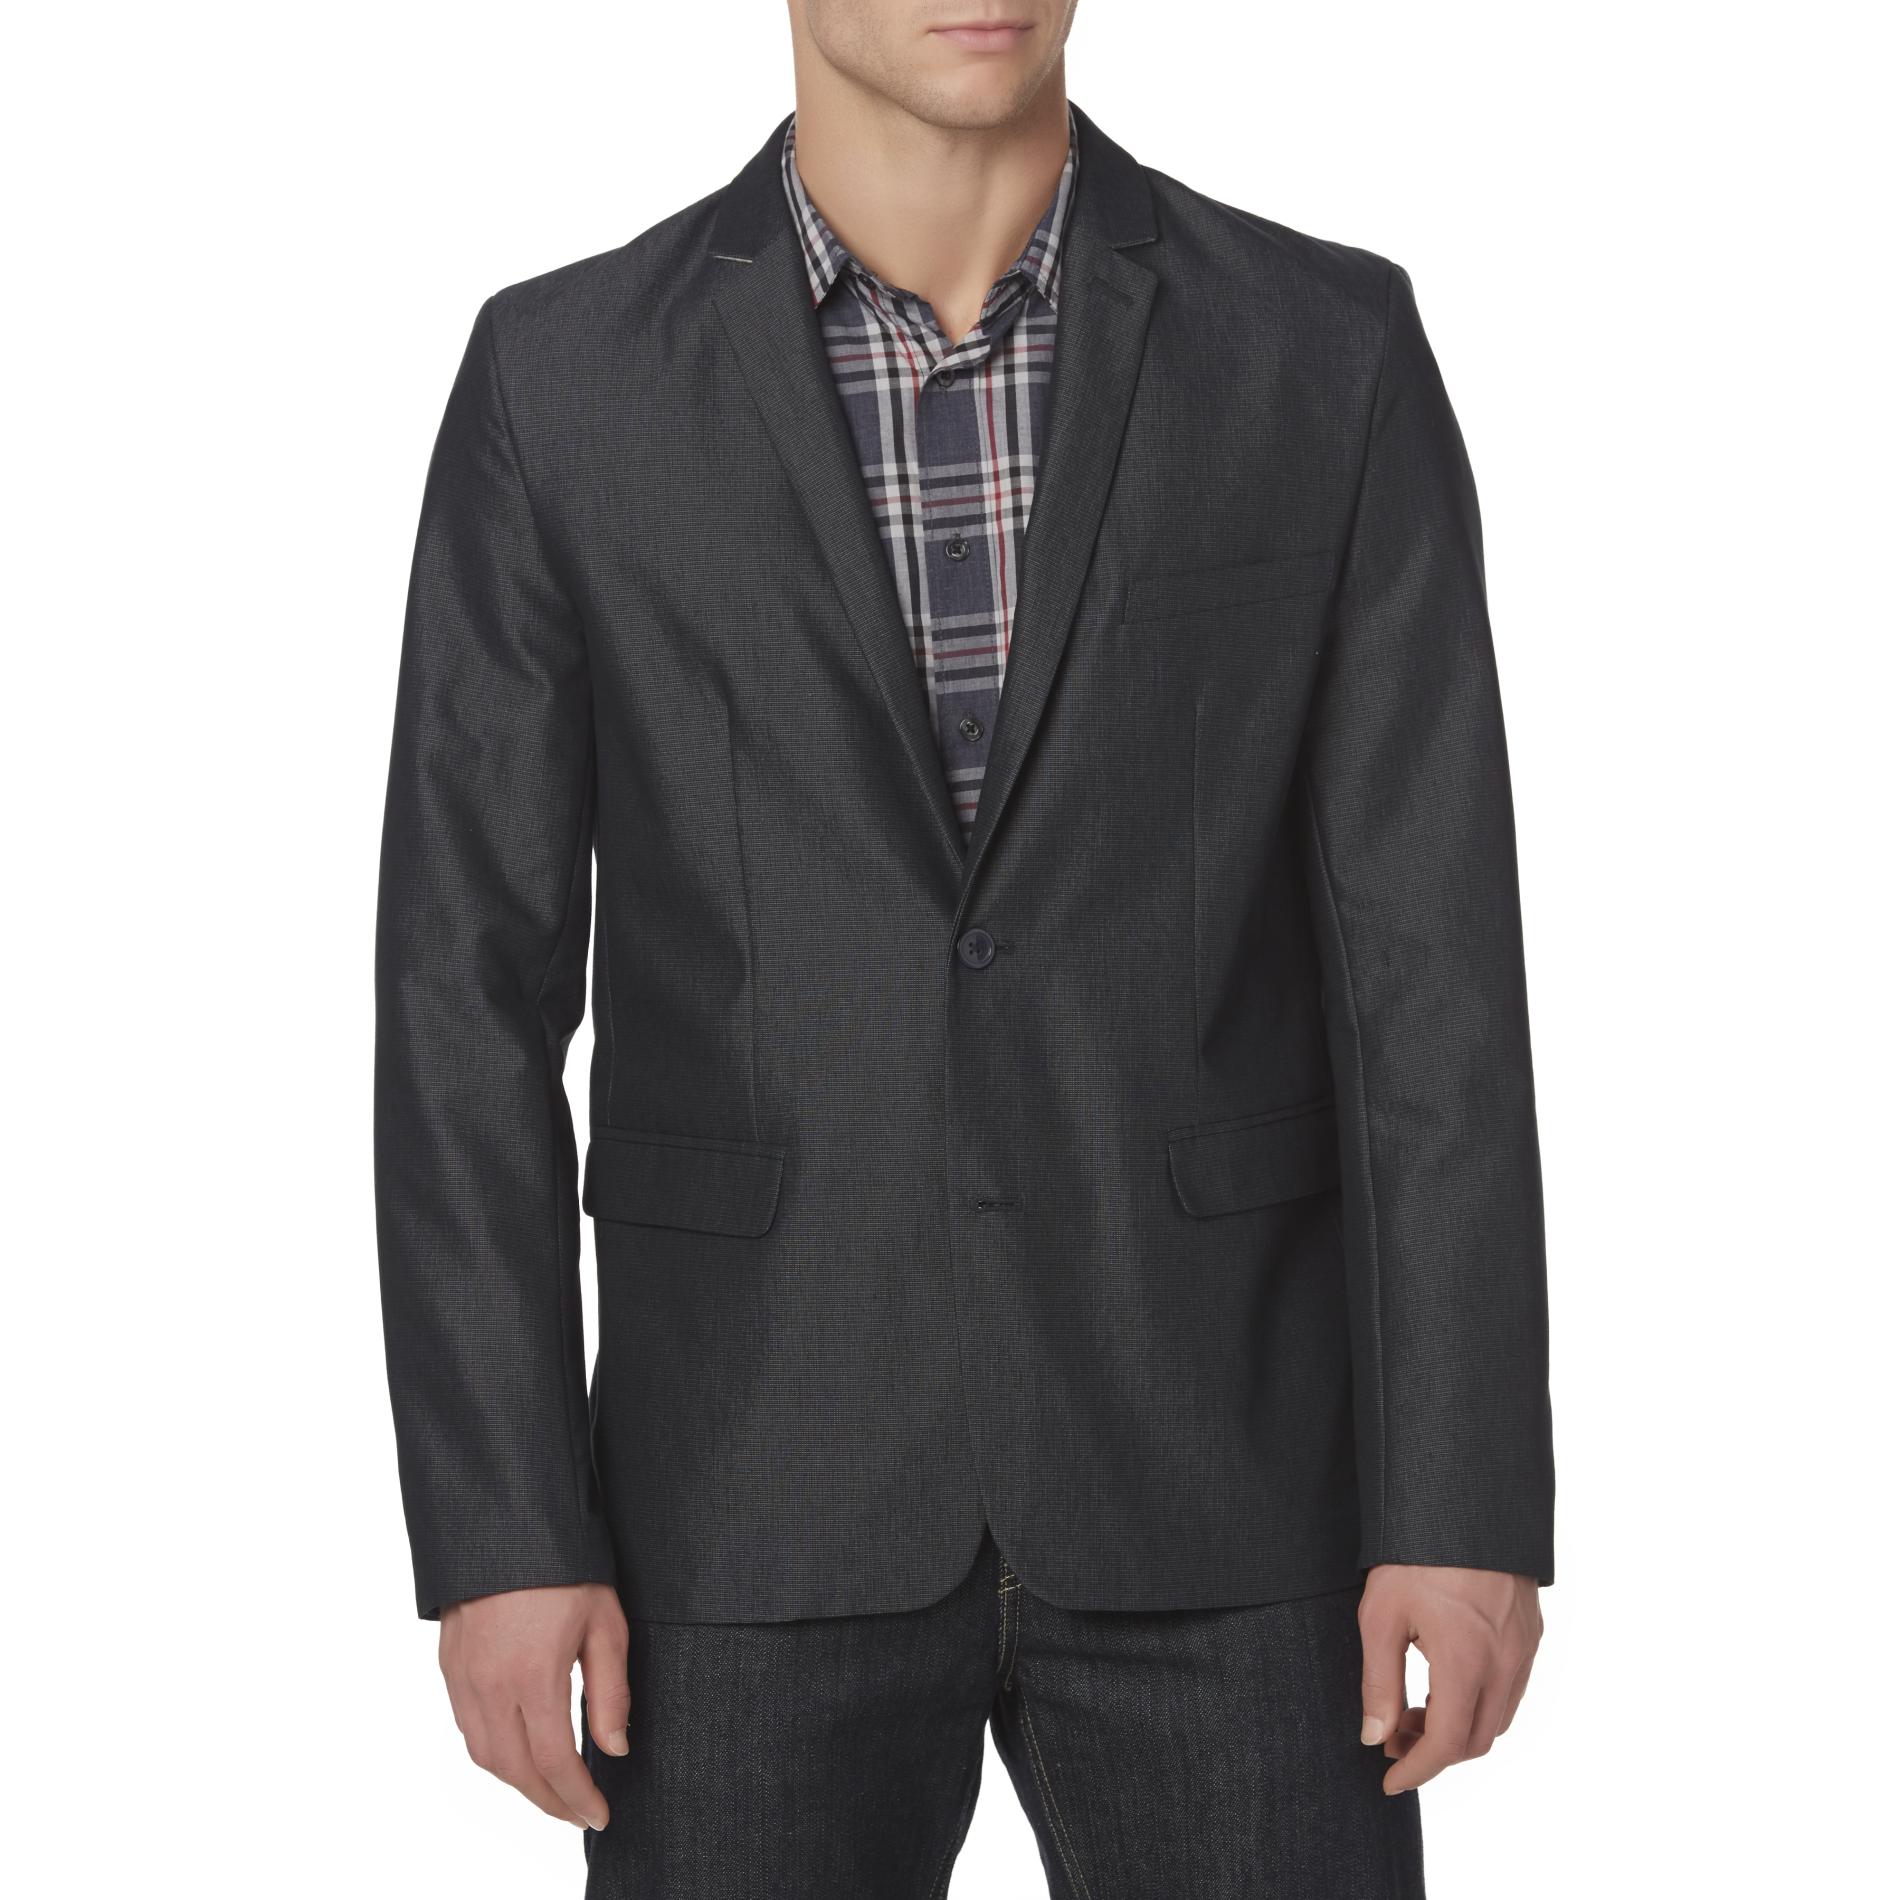 Structure Young Men's Slim Fit Suit Jacket